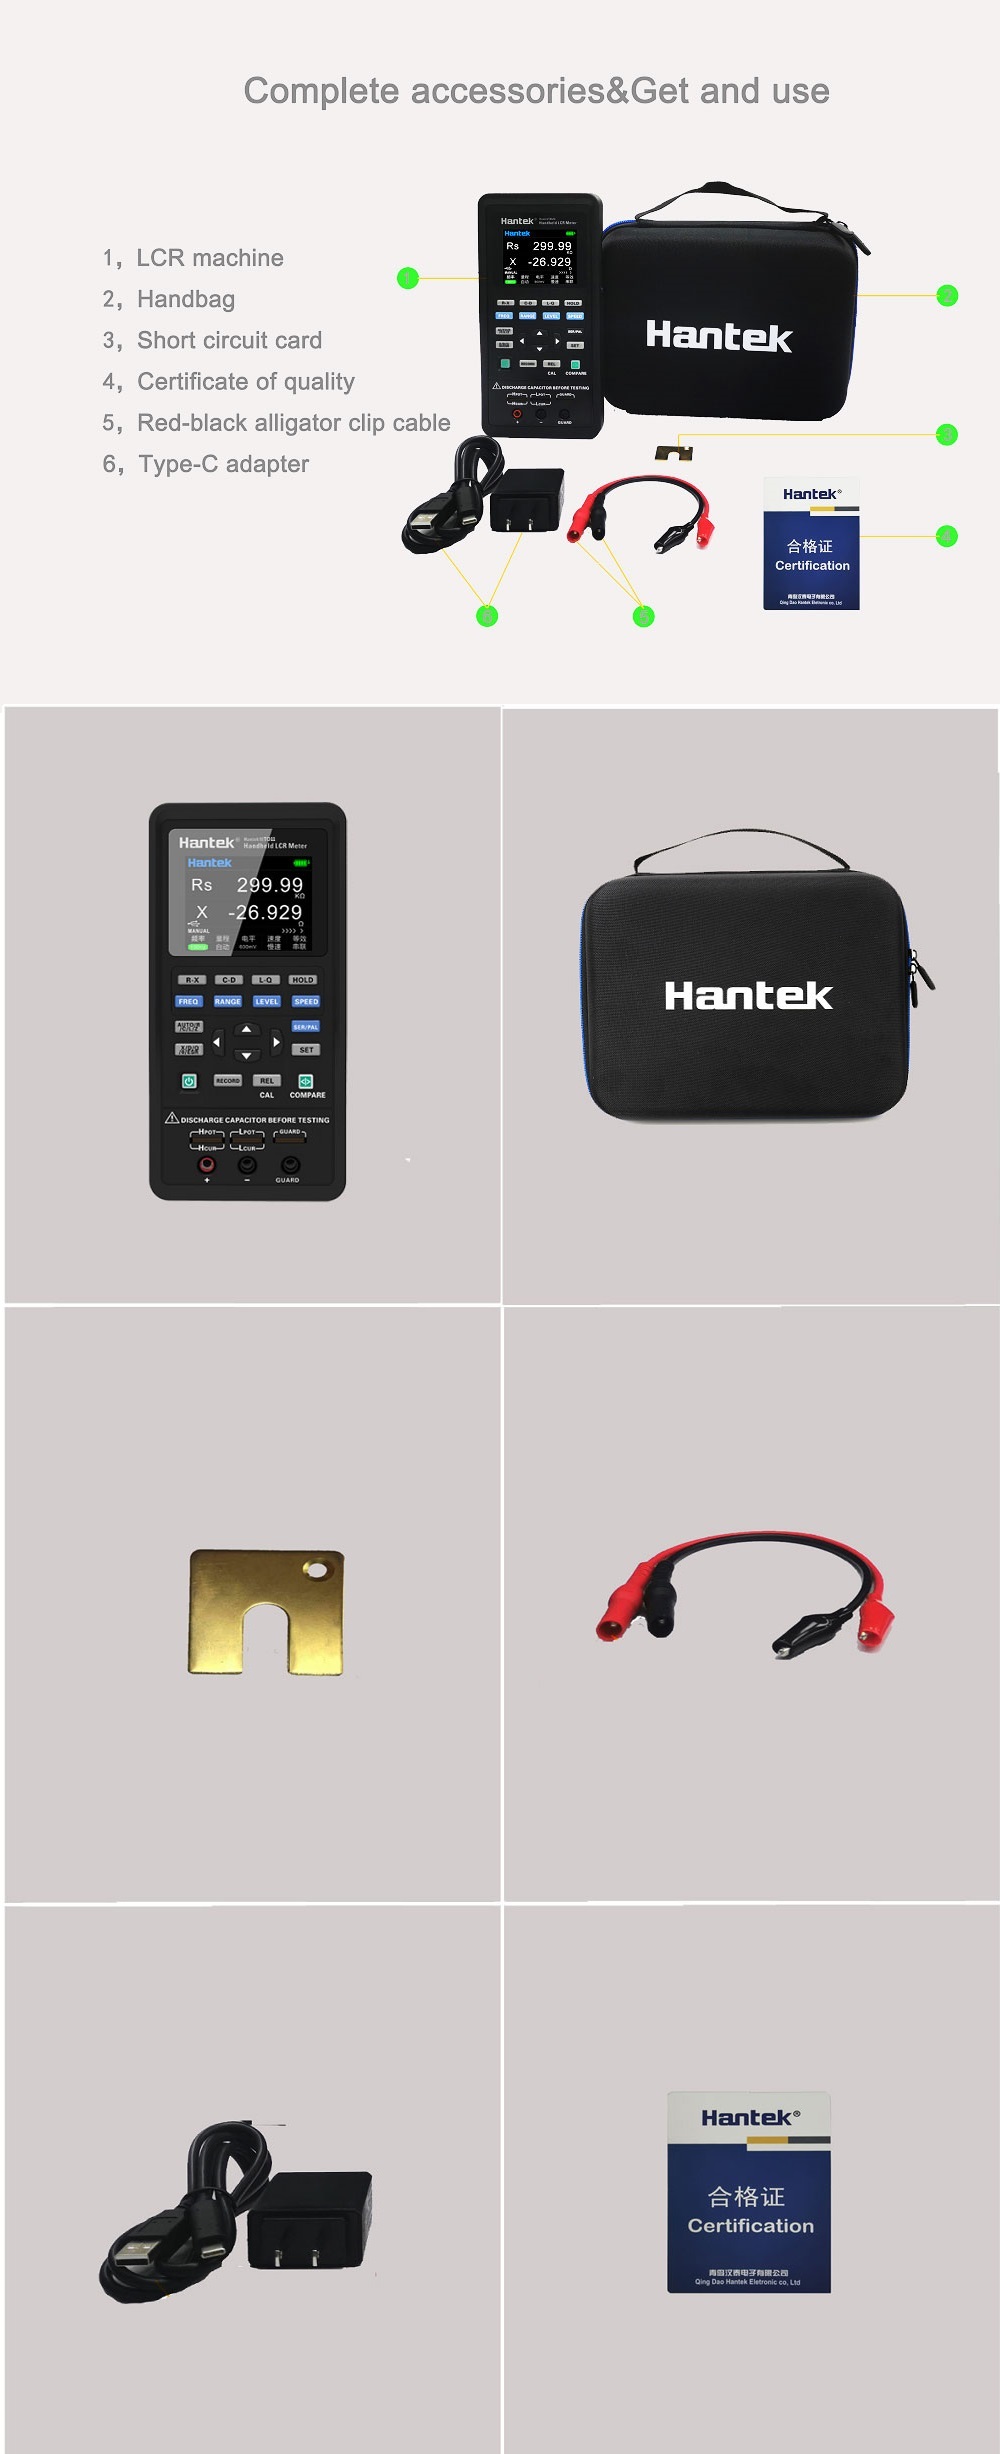 Hantek-Digital-LCR-Meter-Portable-Handeld-Inductance-Capacitance-Resistance-Measurement-Tester-Tools-1957907-2